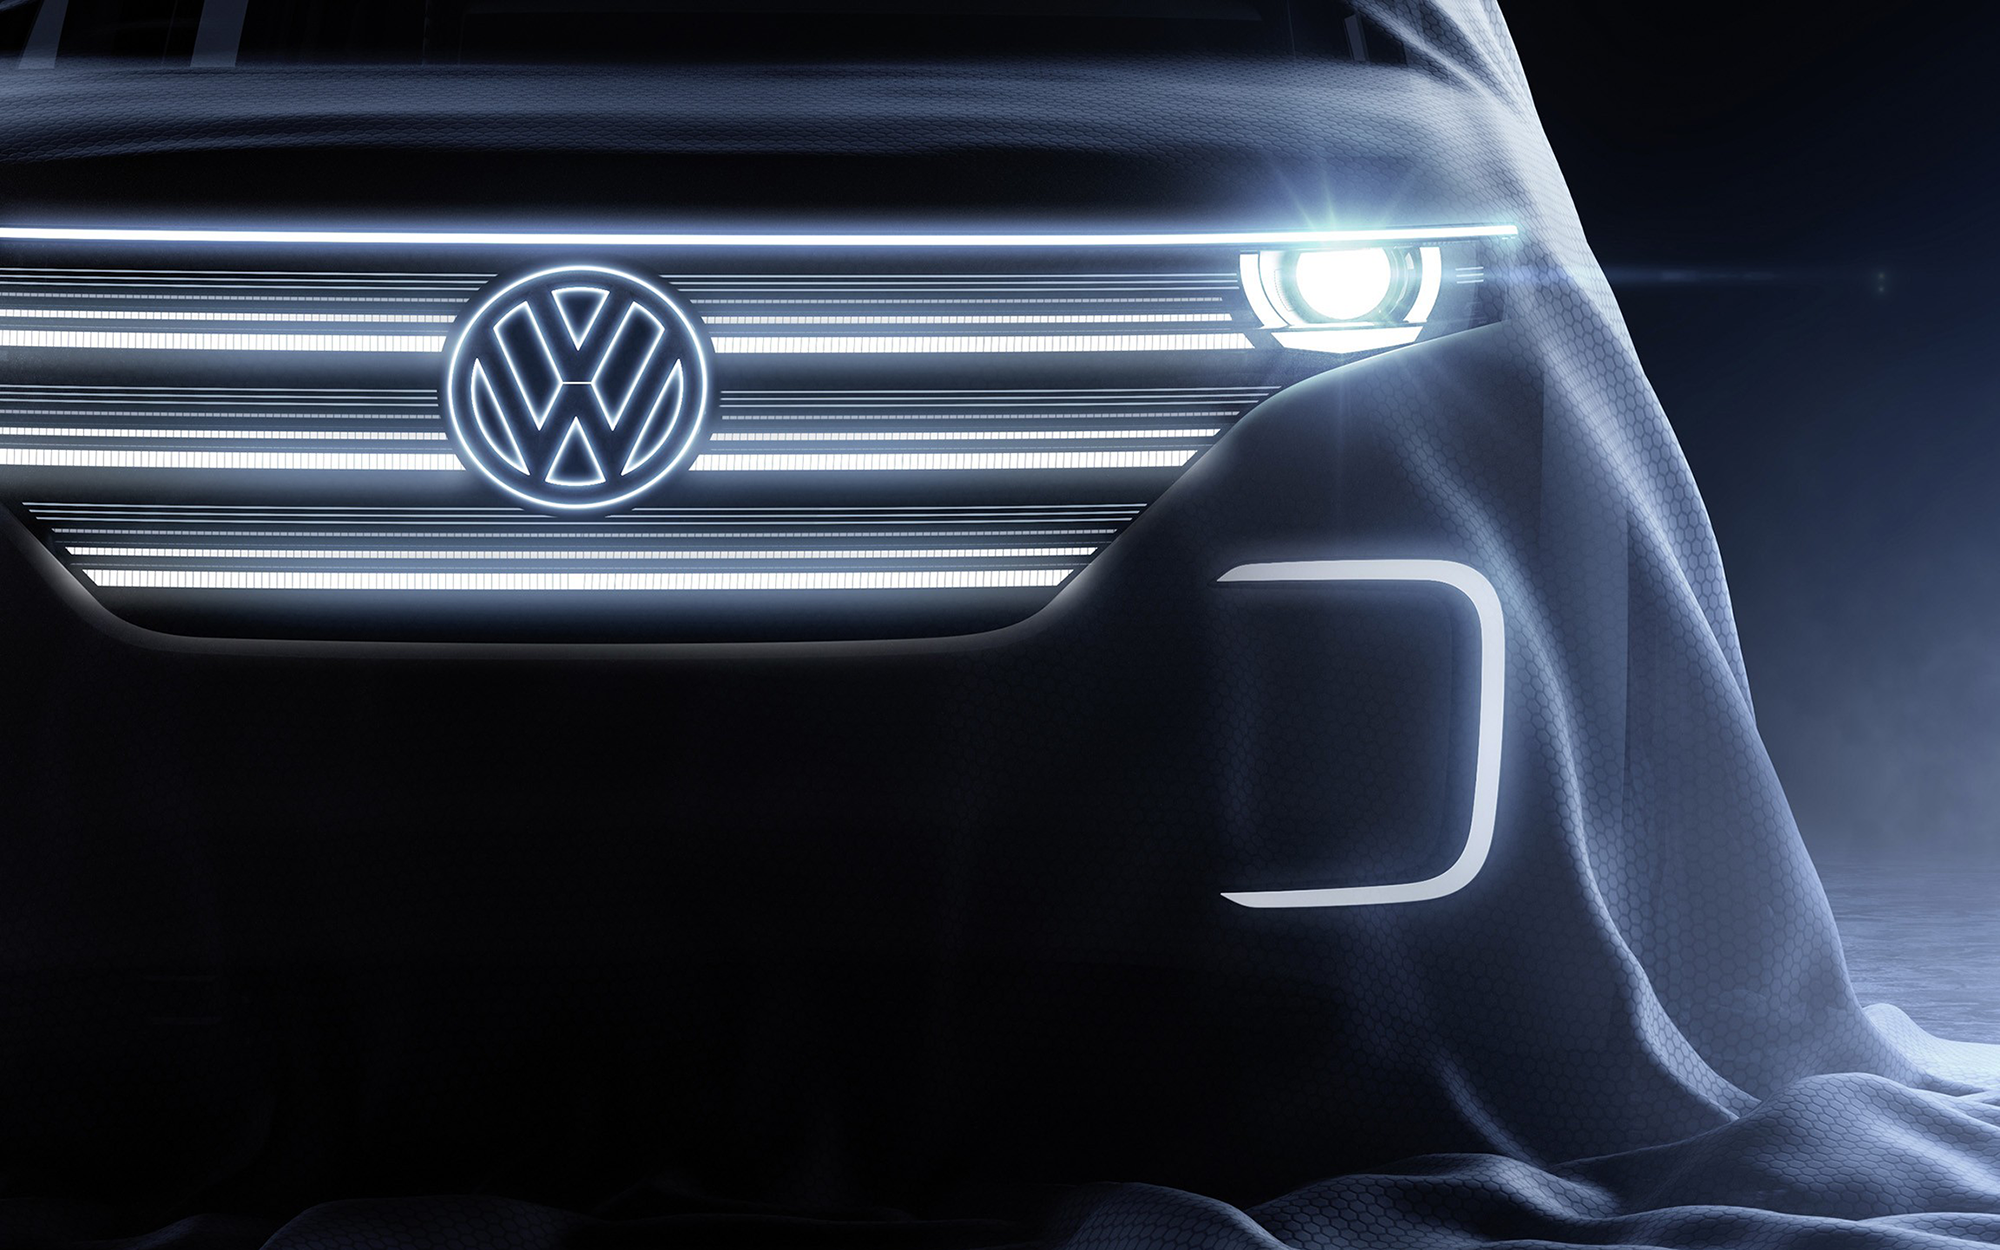 Volkswagen Concept Wallpapers